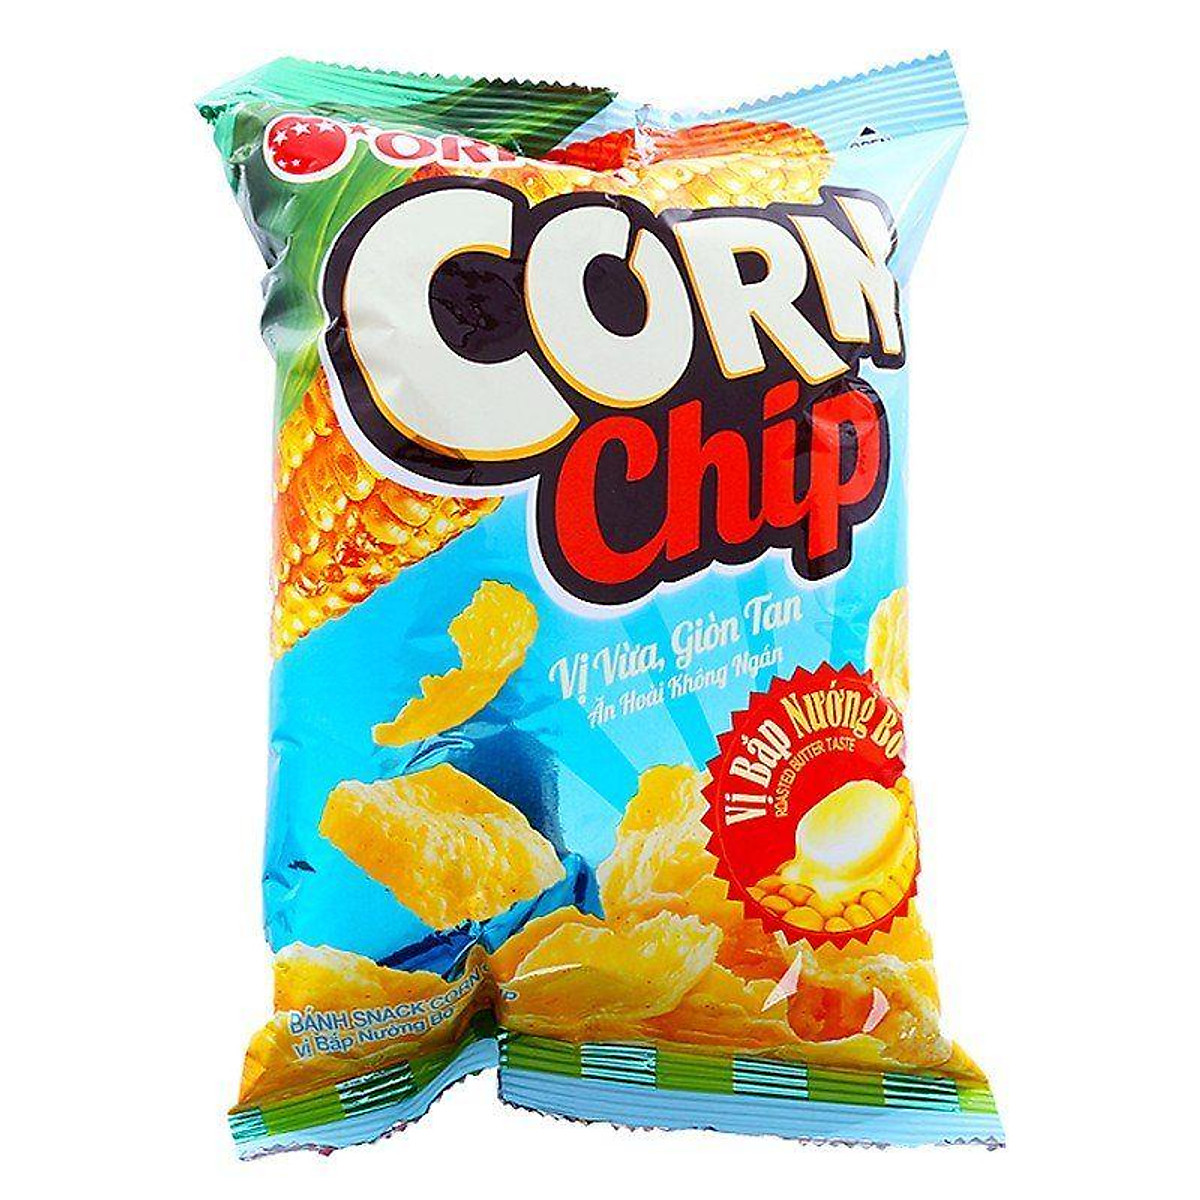 Snack Vị Bắp Nướng Bơ Corn Chip Gói 60g-8936036025996 - Bim bim ...